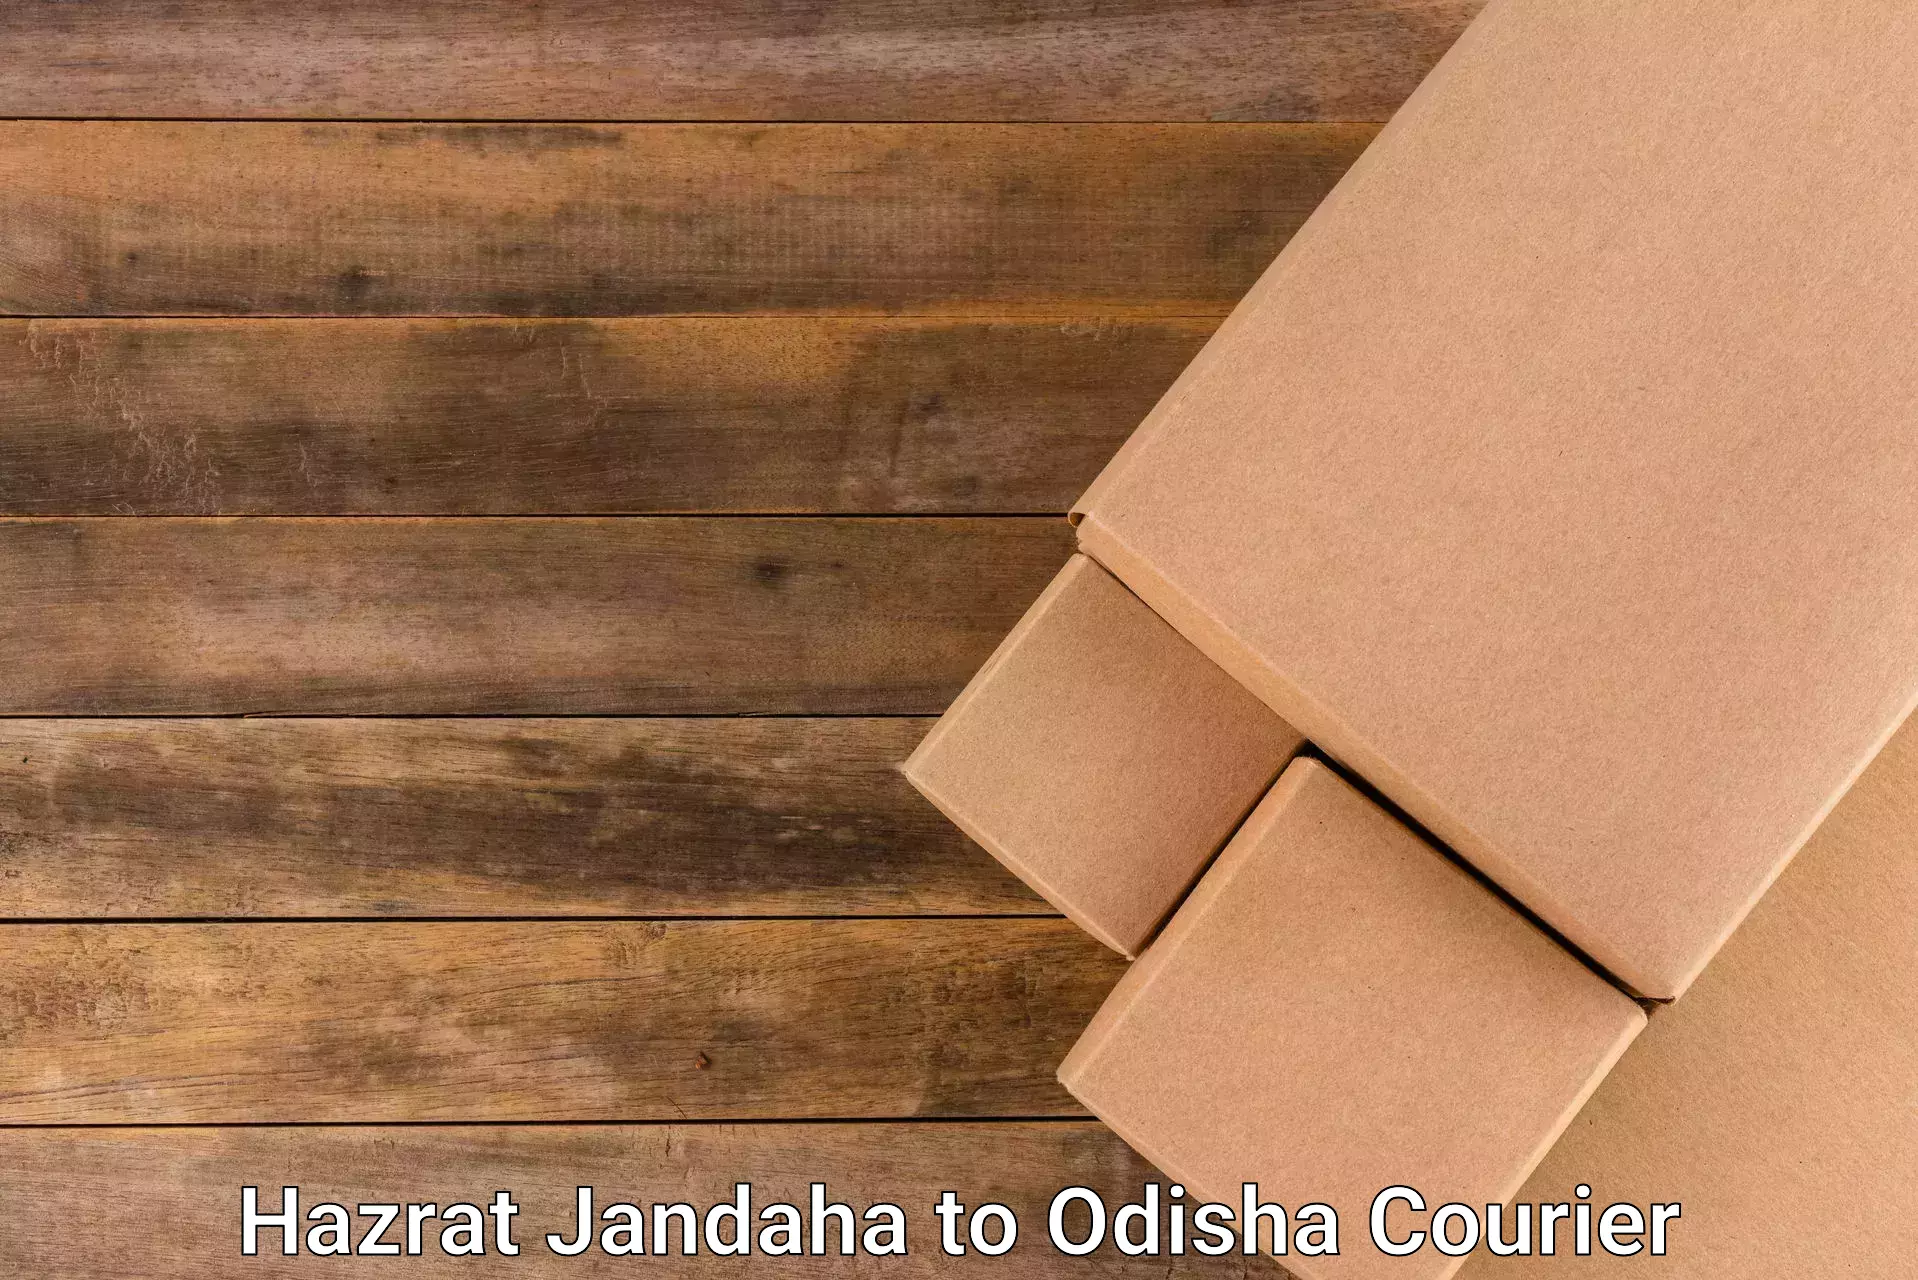 Doorstep delivery service Hazrat Jandaha to Odisha